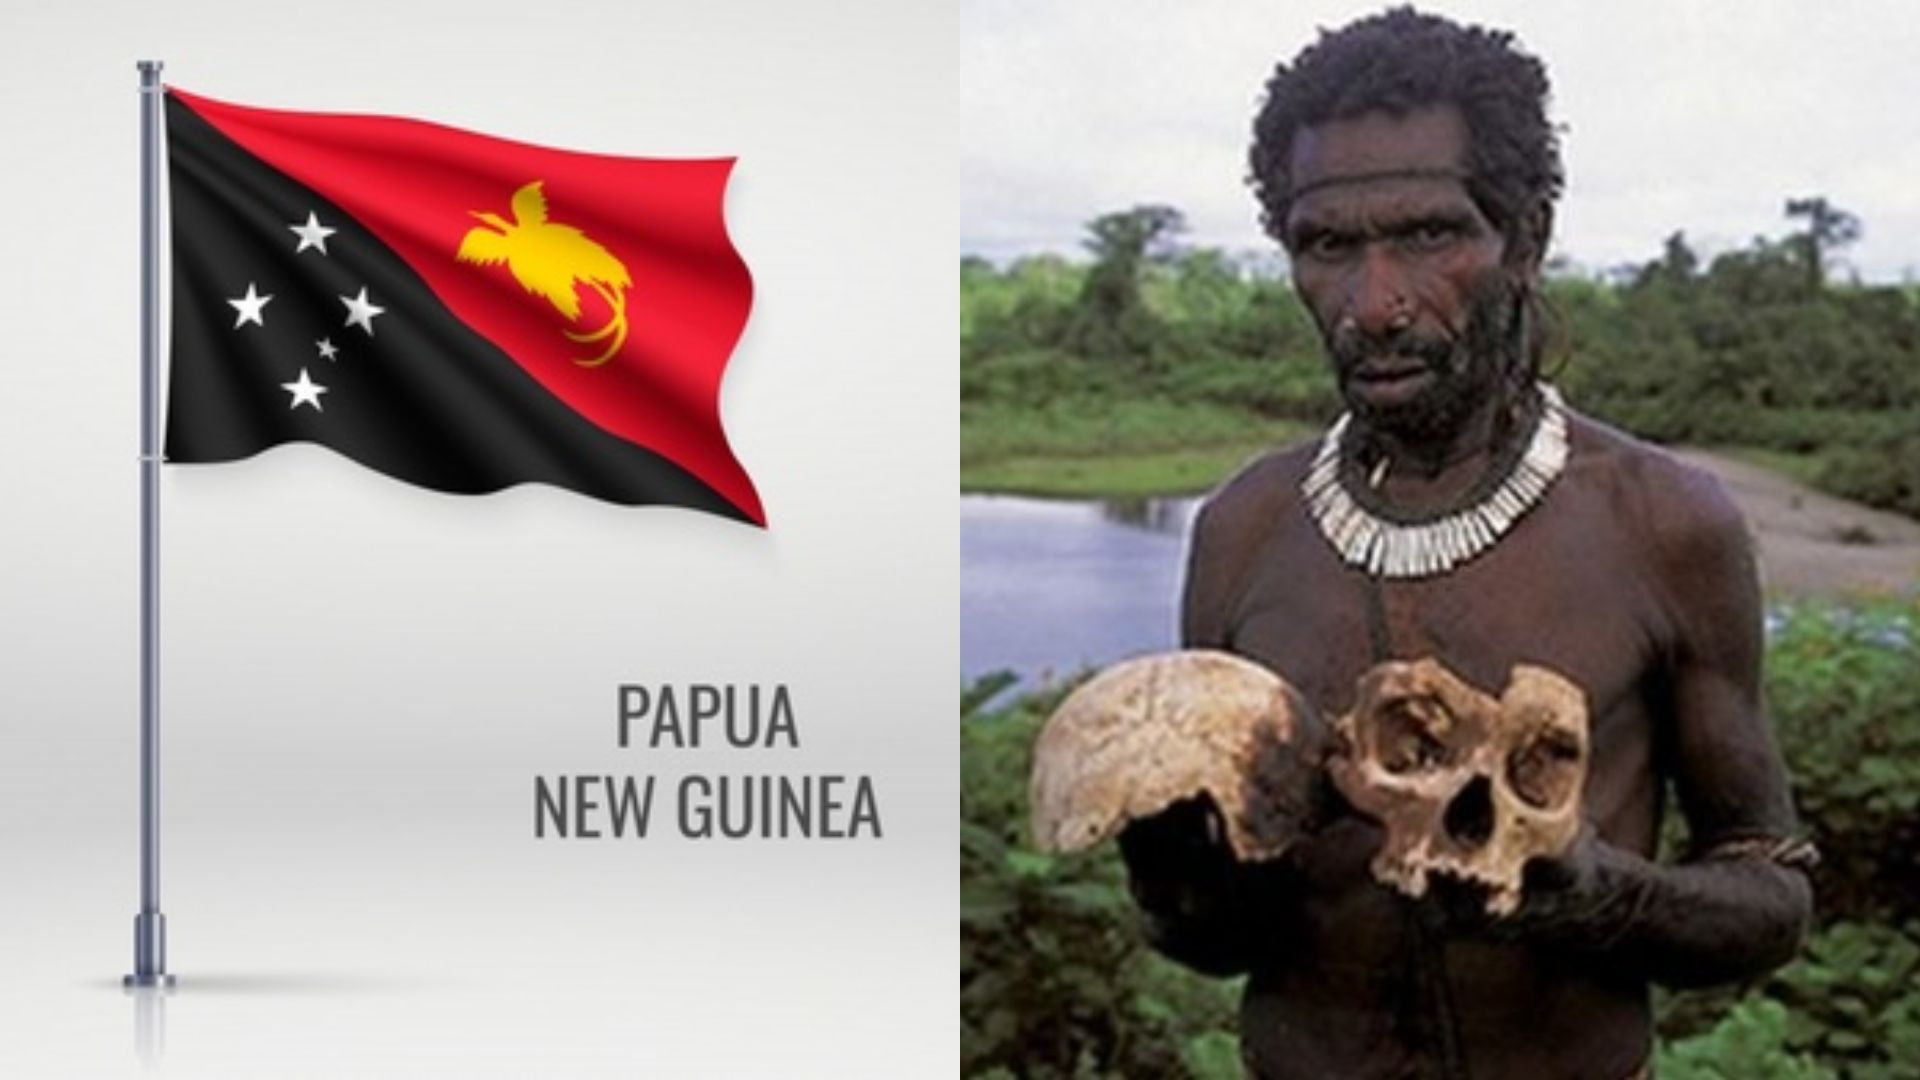 Ternyata Ini 5 Perbedaan Antara Papua Nugini Dan Papua Indonesia, Nomor 1 Bikin Kaget!